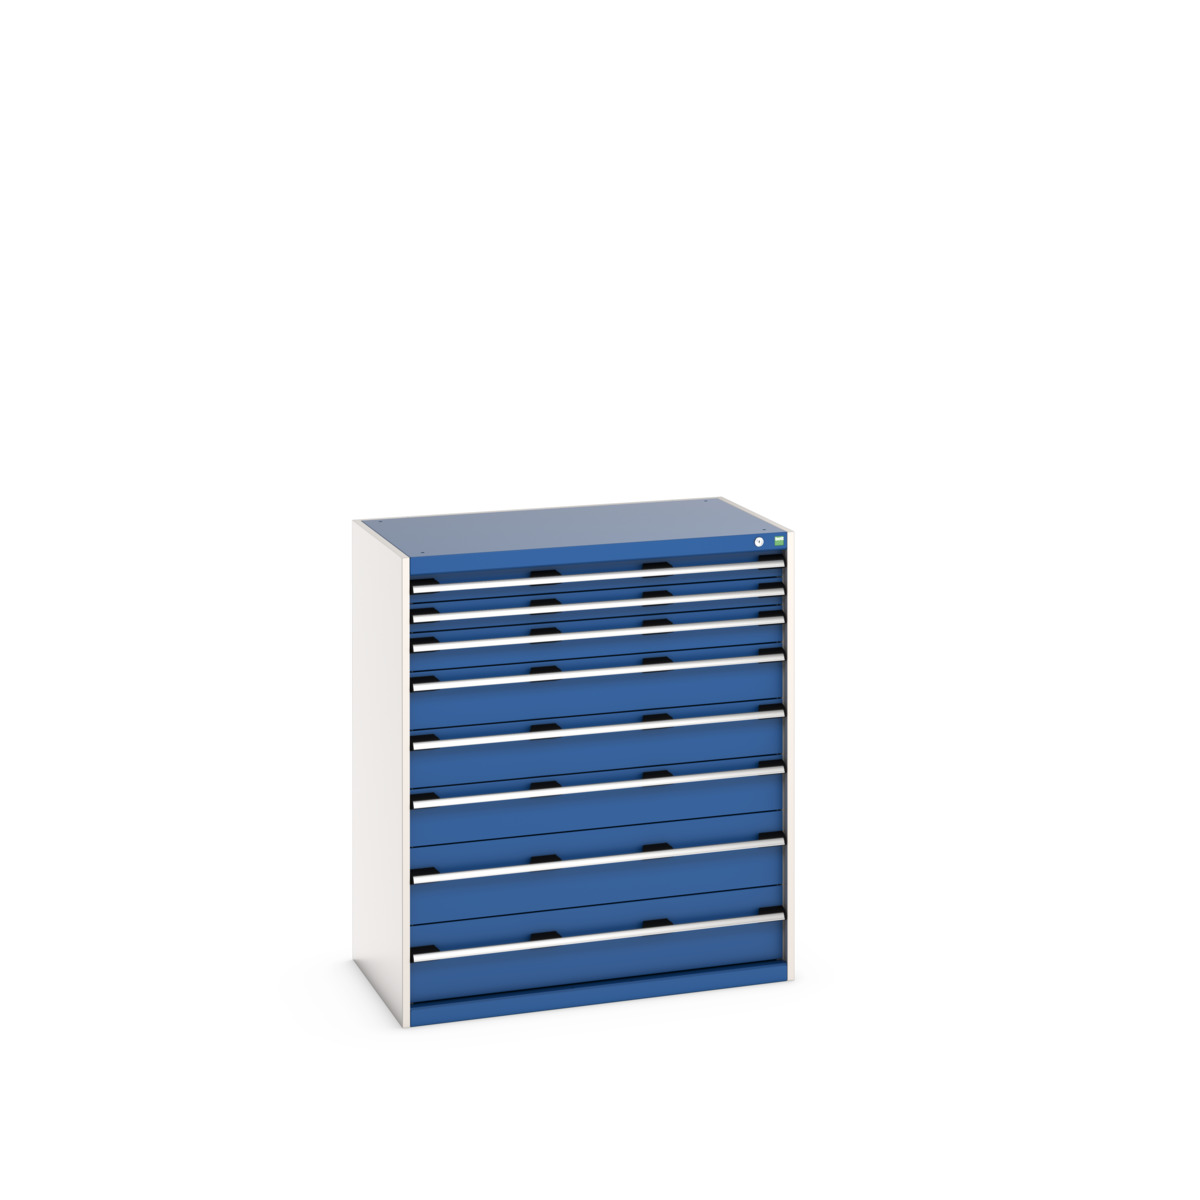 40021040.11V - cubio drawer cabinet